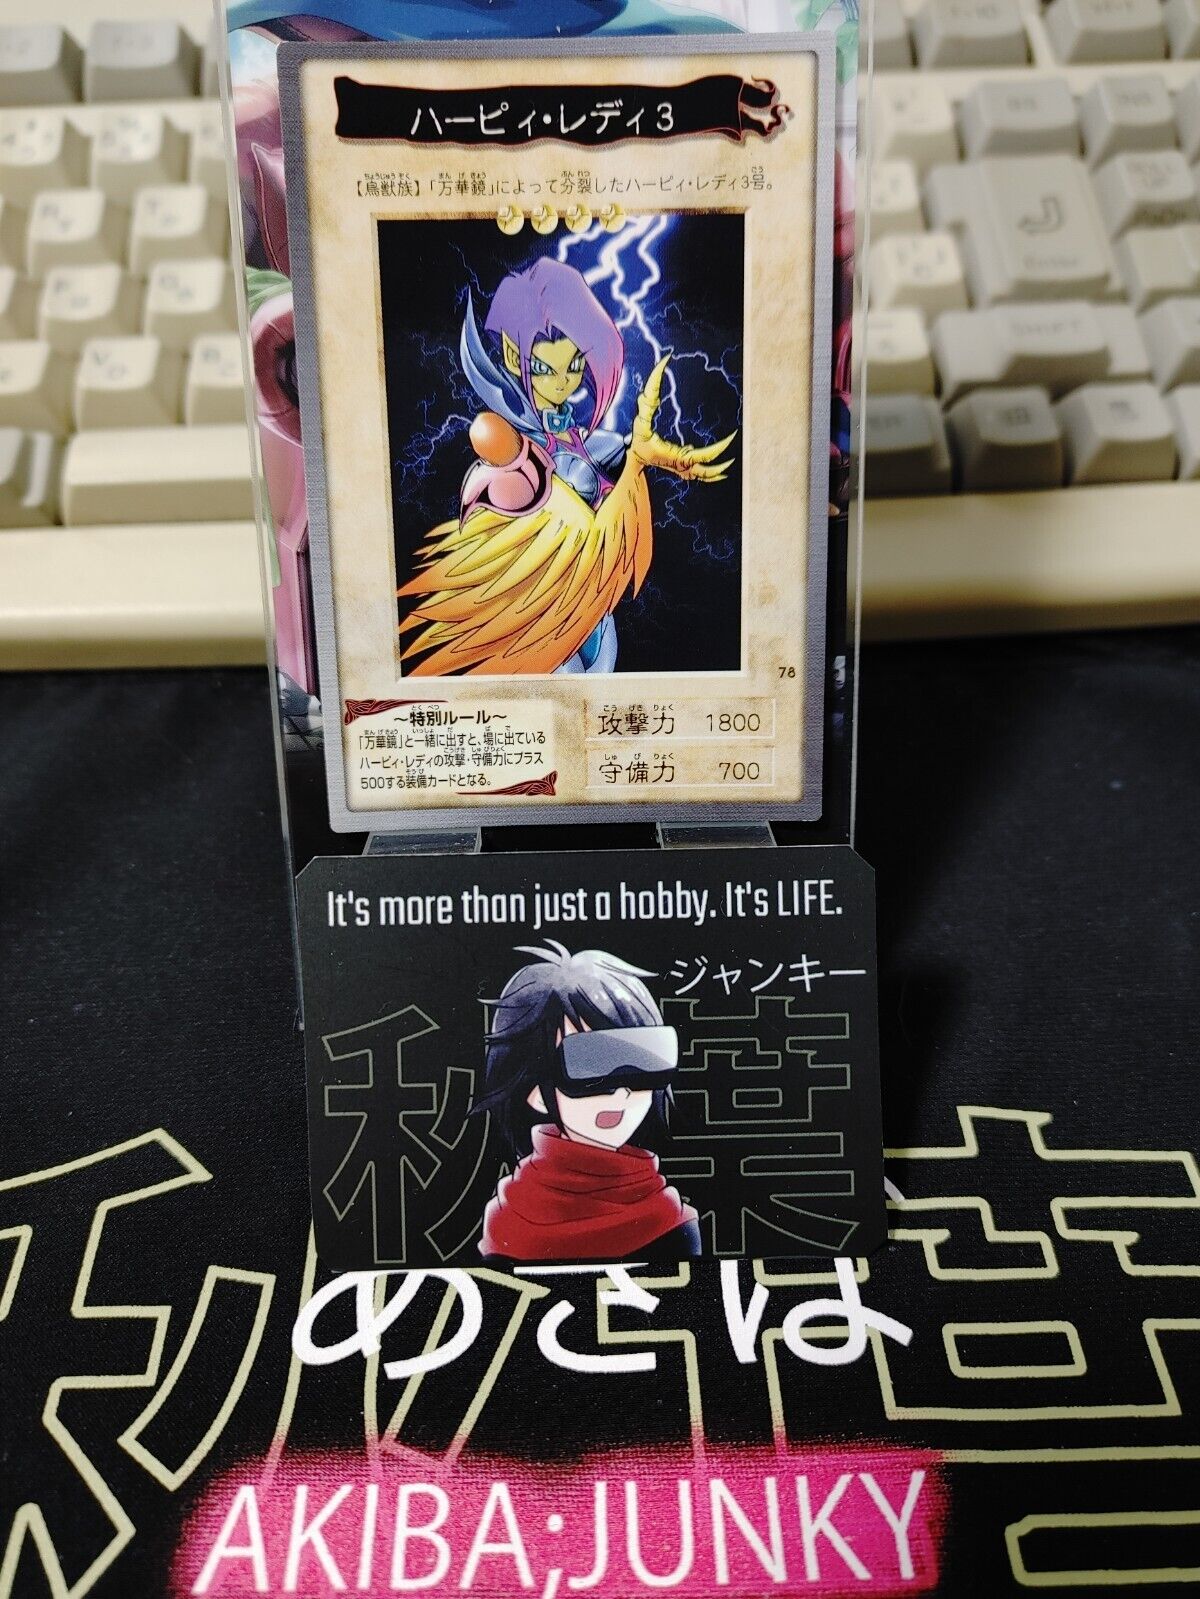 Yu-Gi-Oh Bandai Carddass Card #78 Harpie Lady 3 Japanese Retro Japan LP-NM